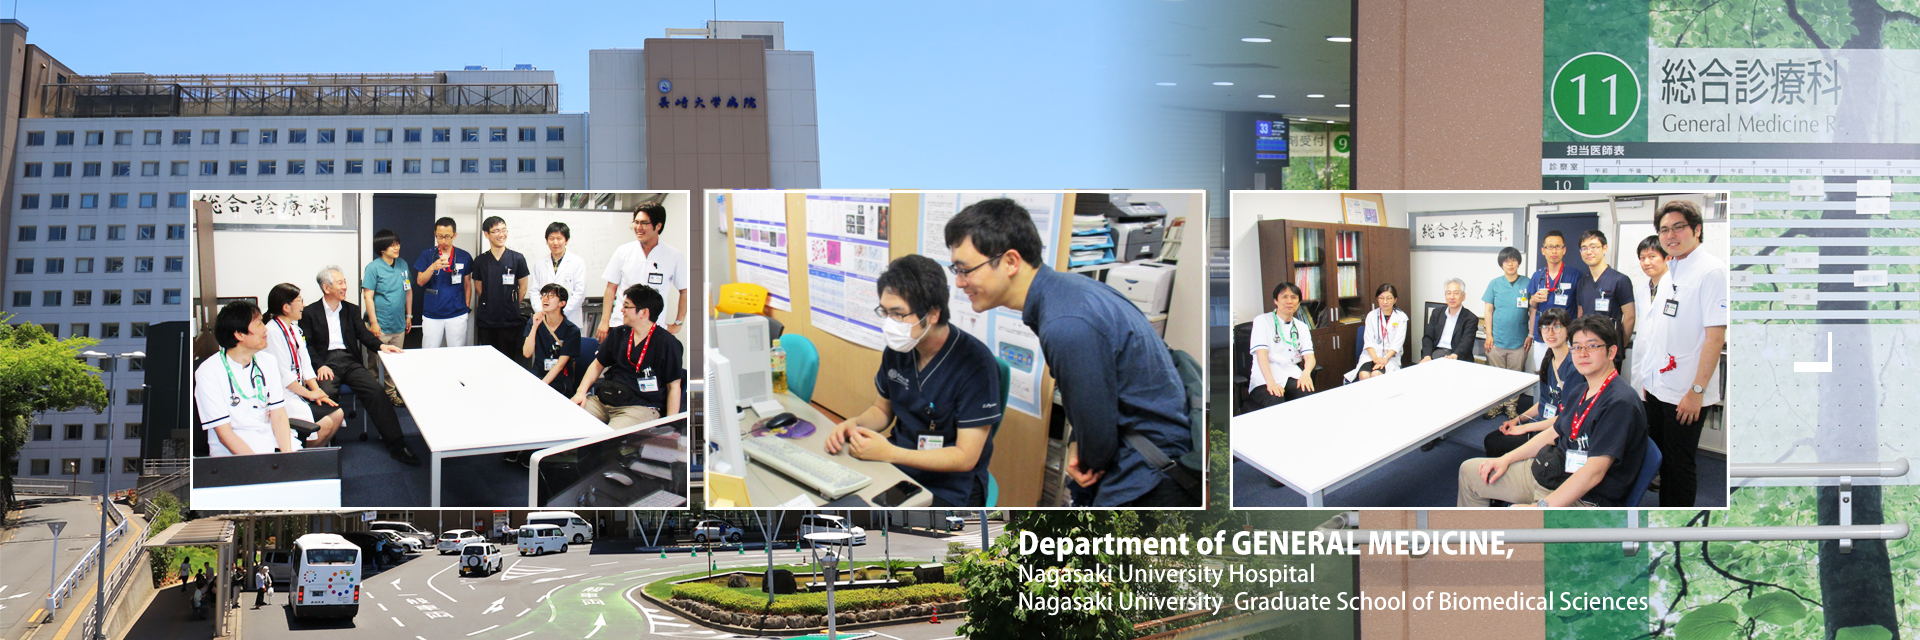 Department of GENERAL MEDICINE, Nagasaki University